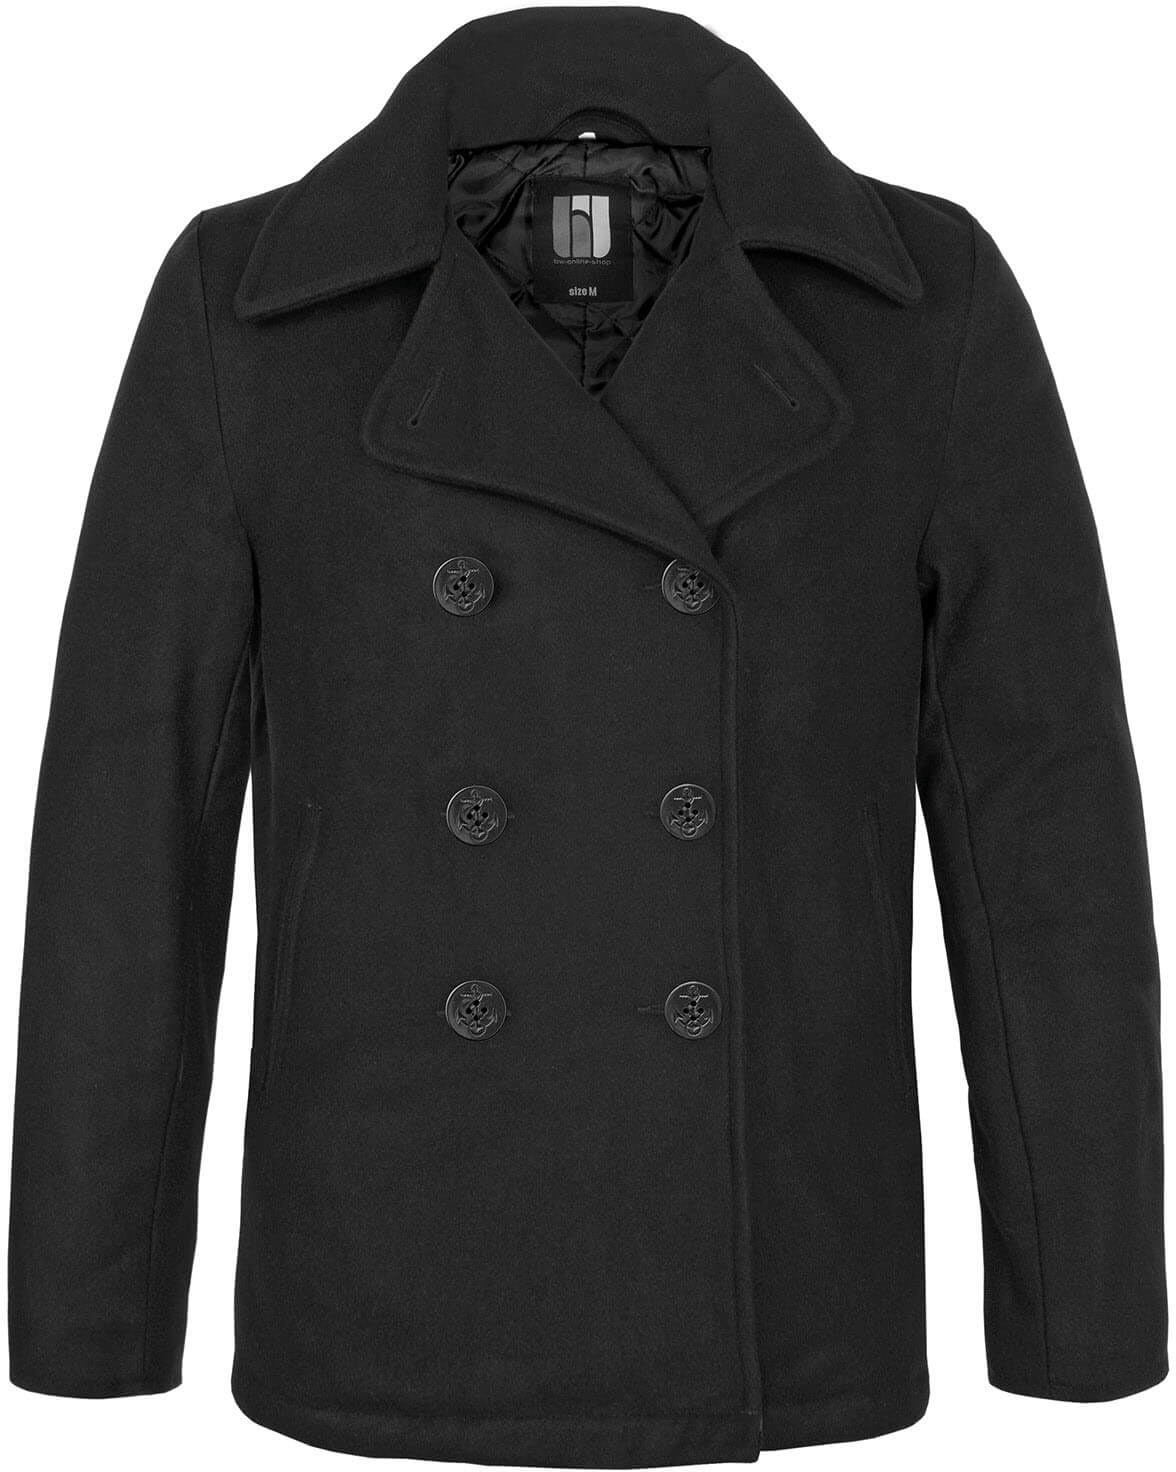 bw-online-shop Navy Pea Coat Mantel schwarz, Größe 5XL